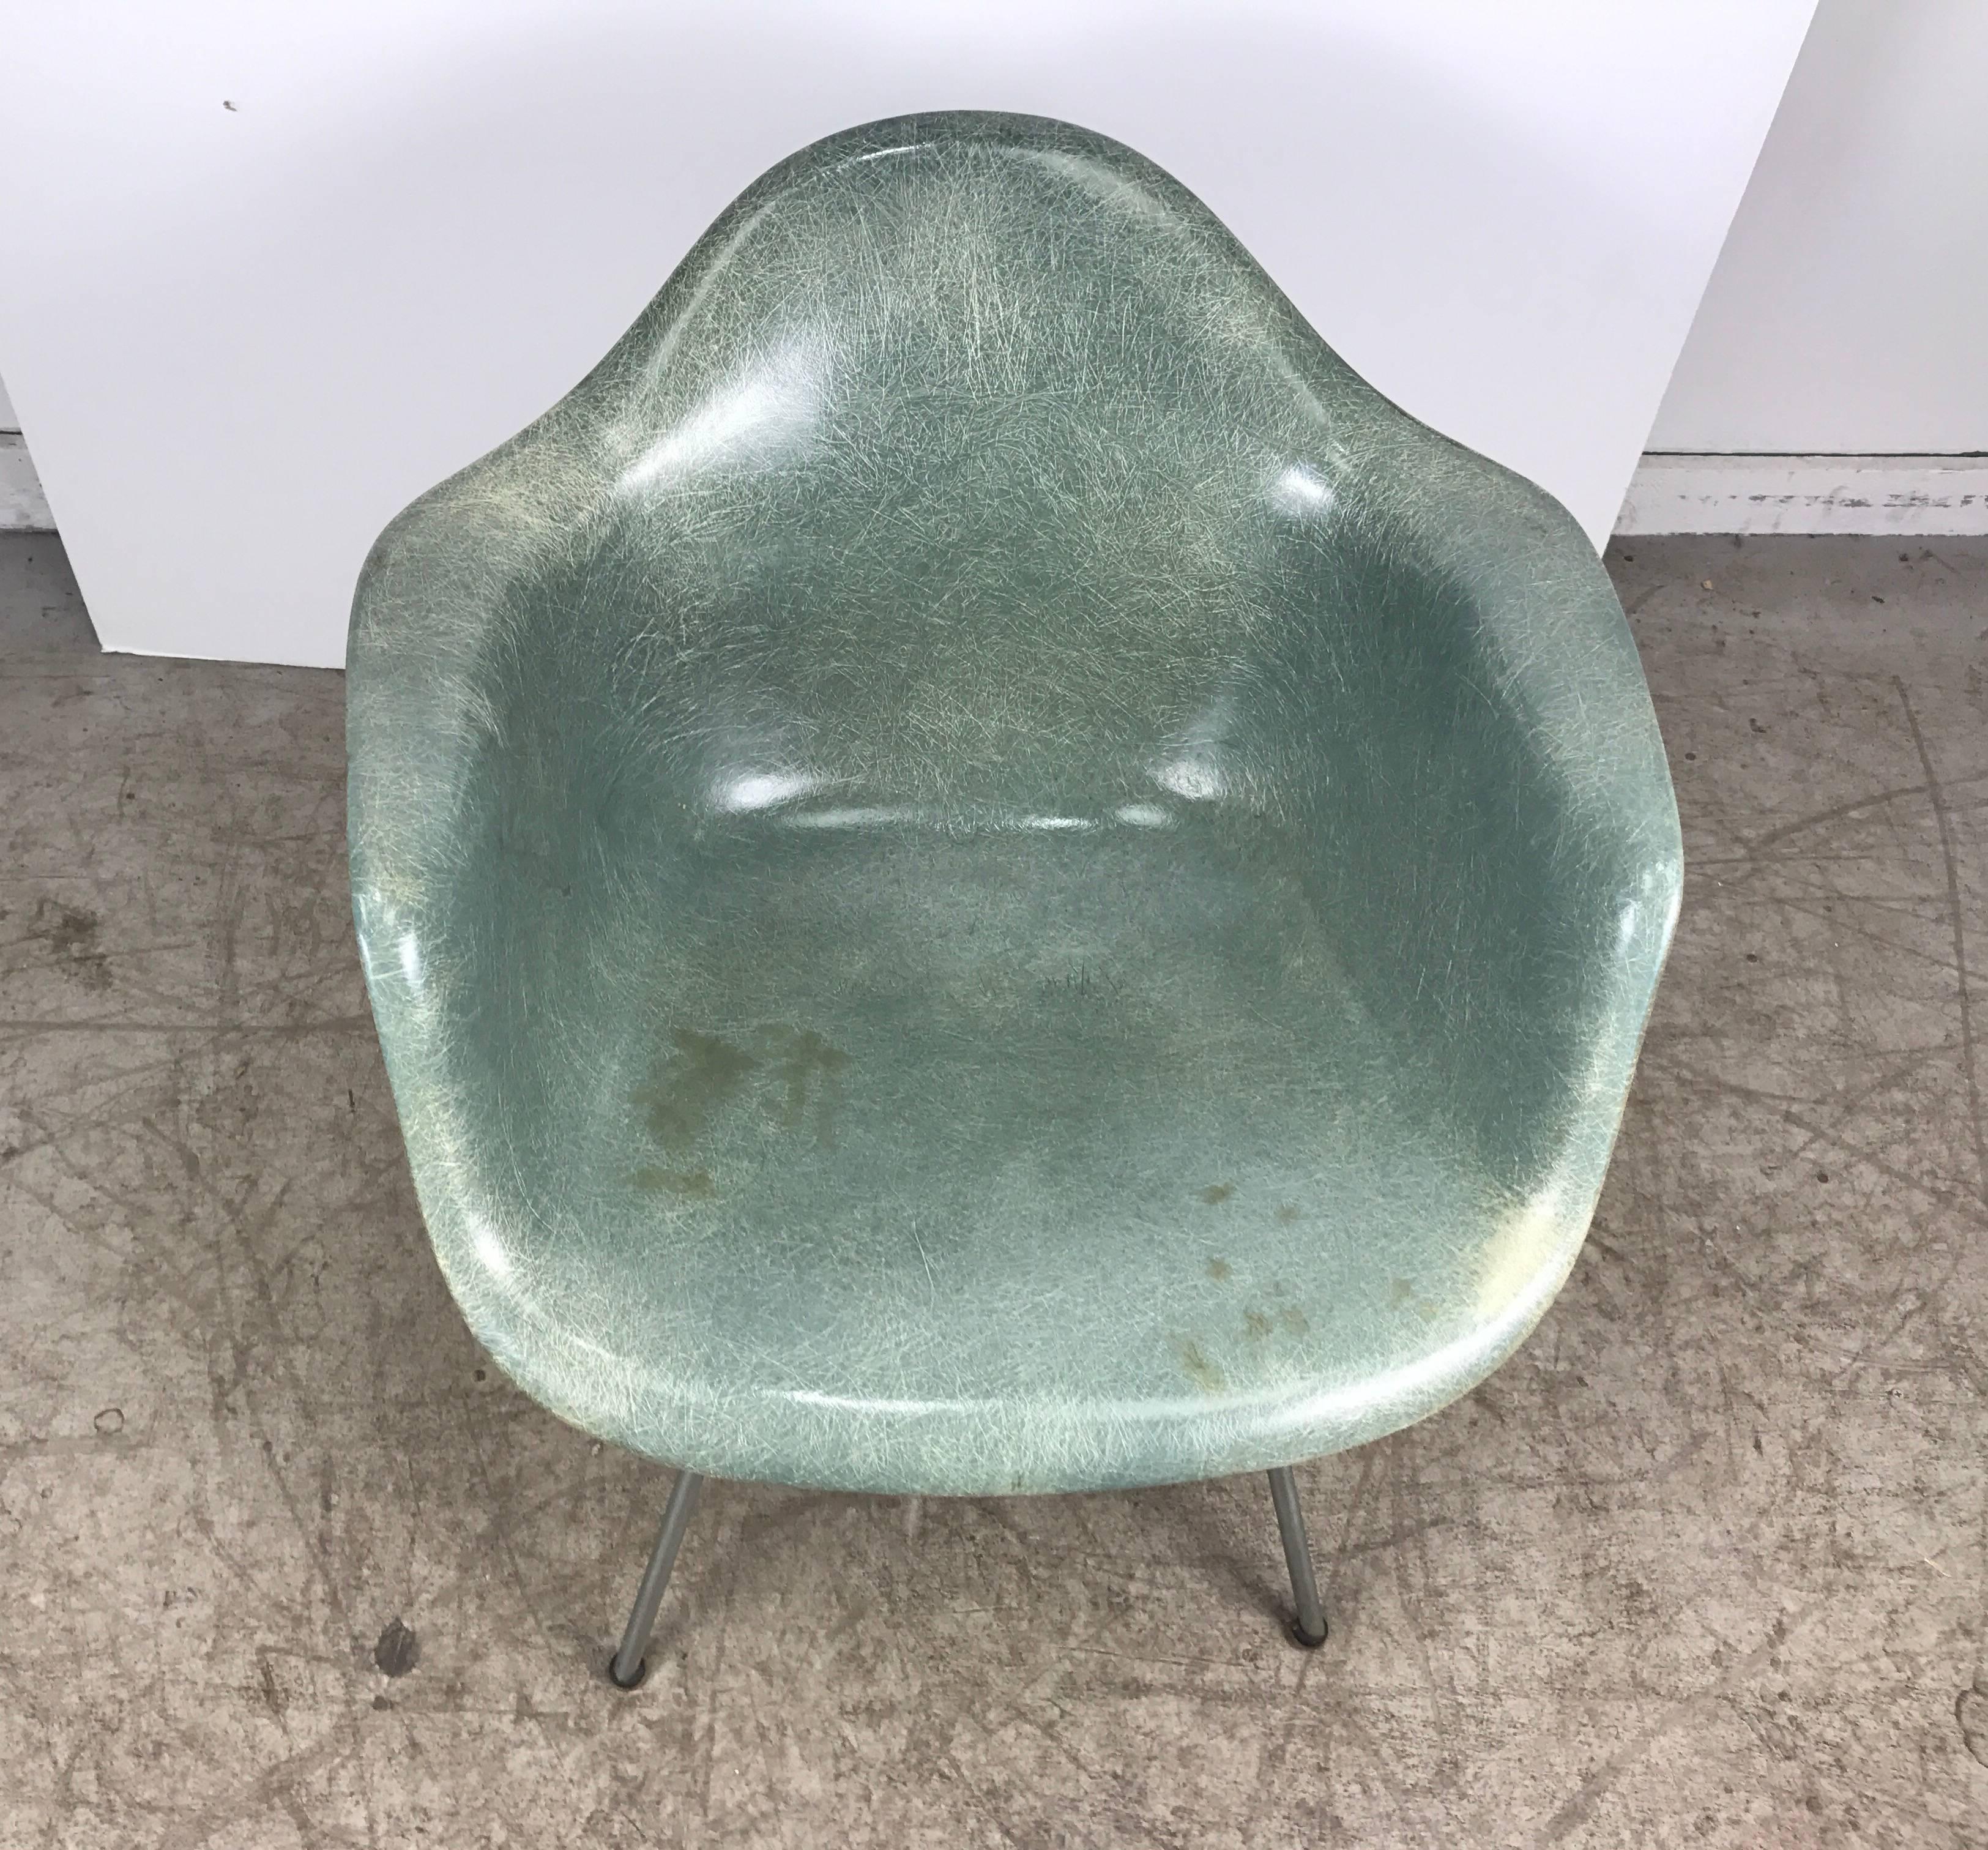 Première génération, vers 1950 Charles et Ray Eames. Chaise de salon à bras en mousse de mer verte de qualité musée, fabriquée par Zenith Plastic Co./Herman Miller. Il est doté d'étonnantes fibres apparentes, d'un revêtement en gel d'origine, d'un